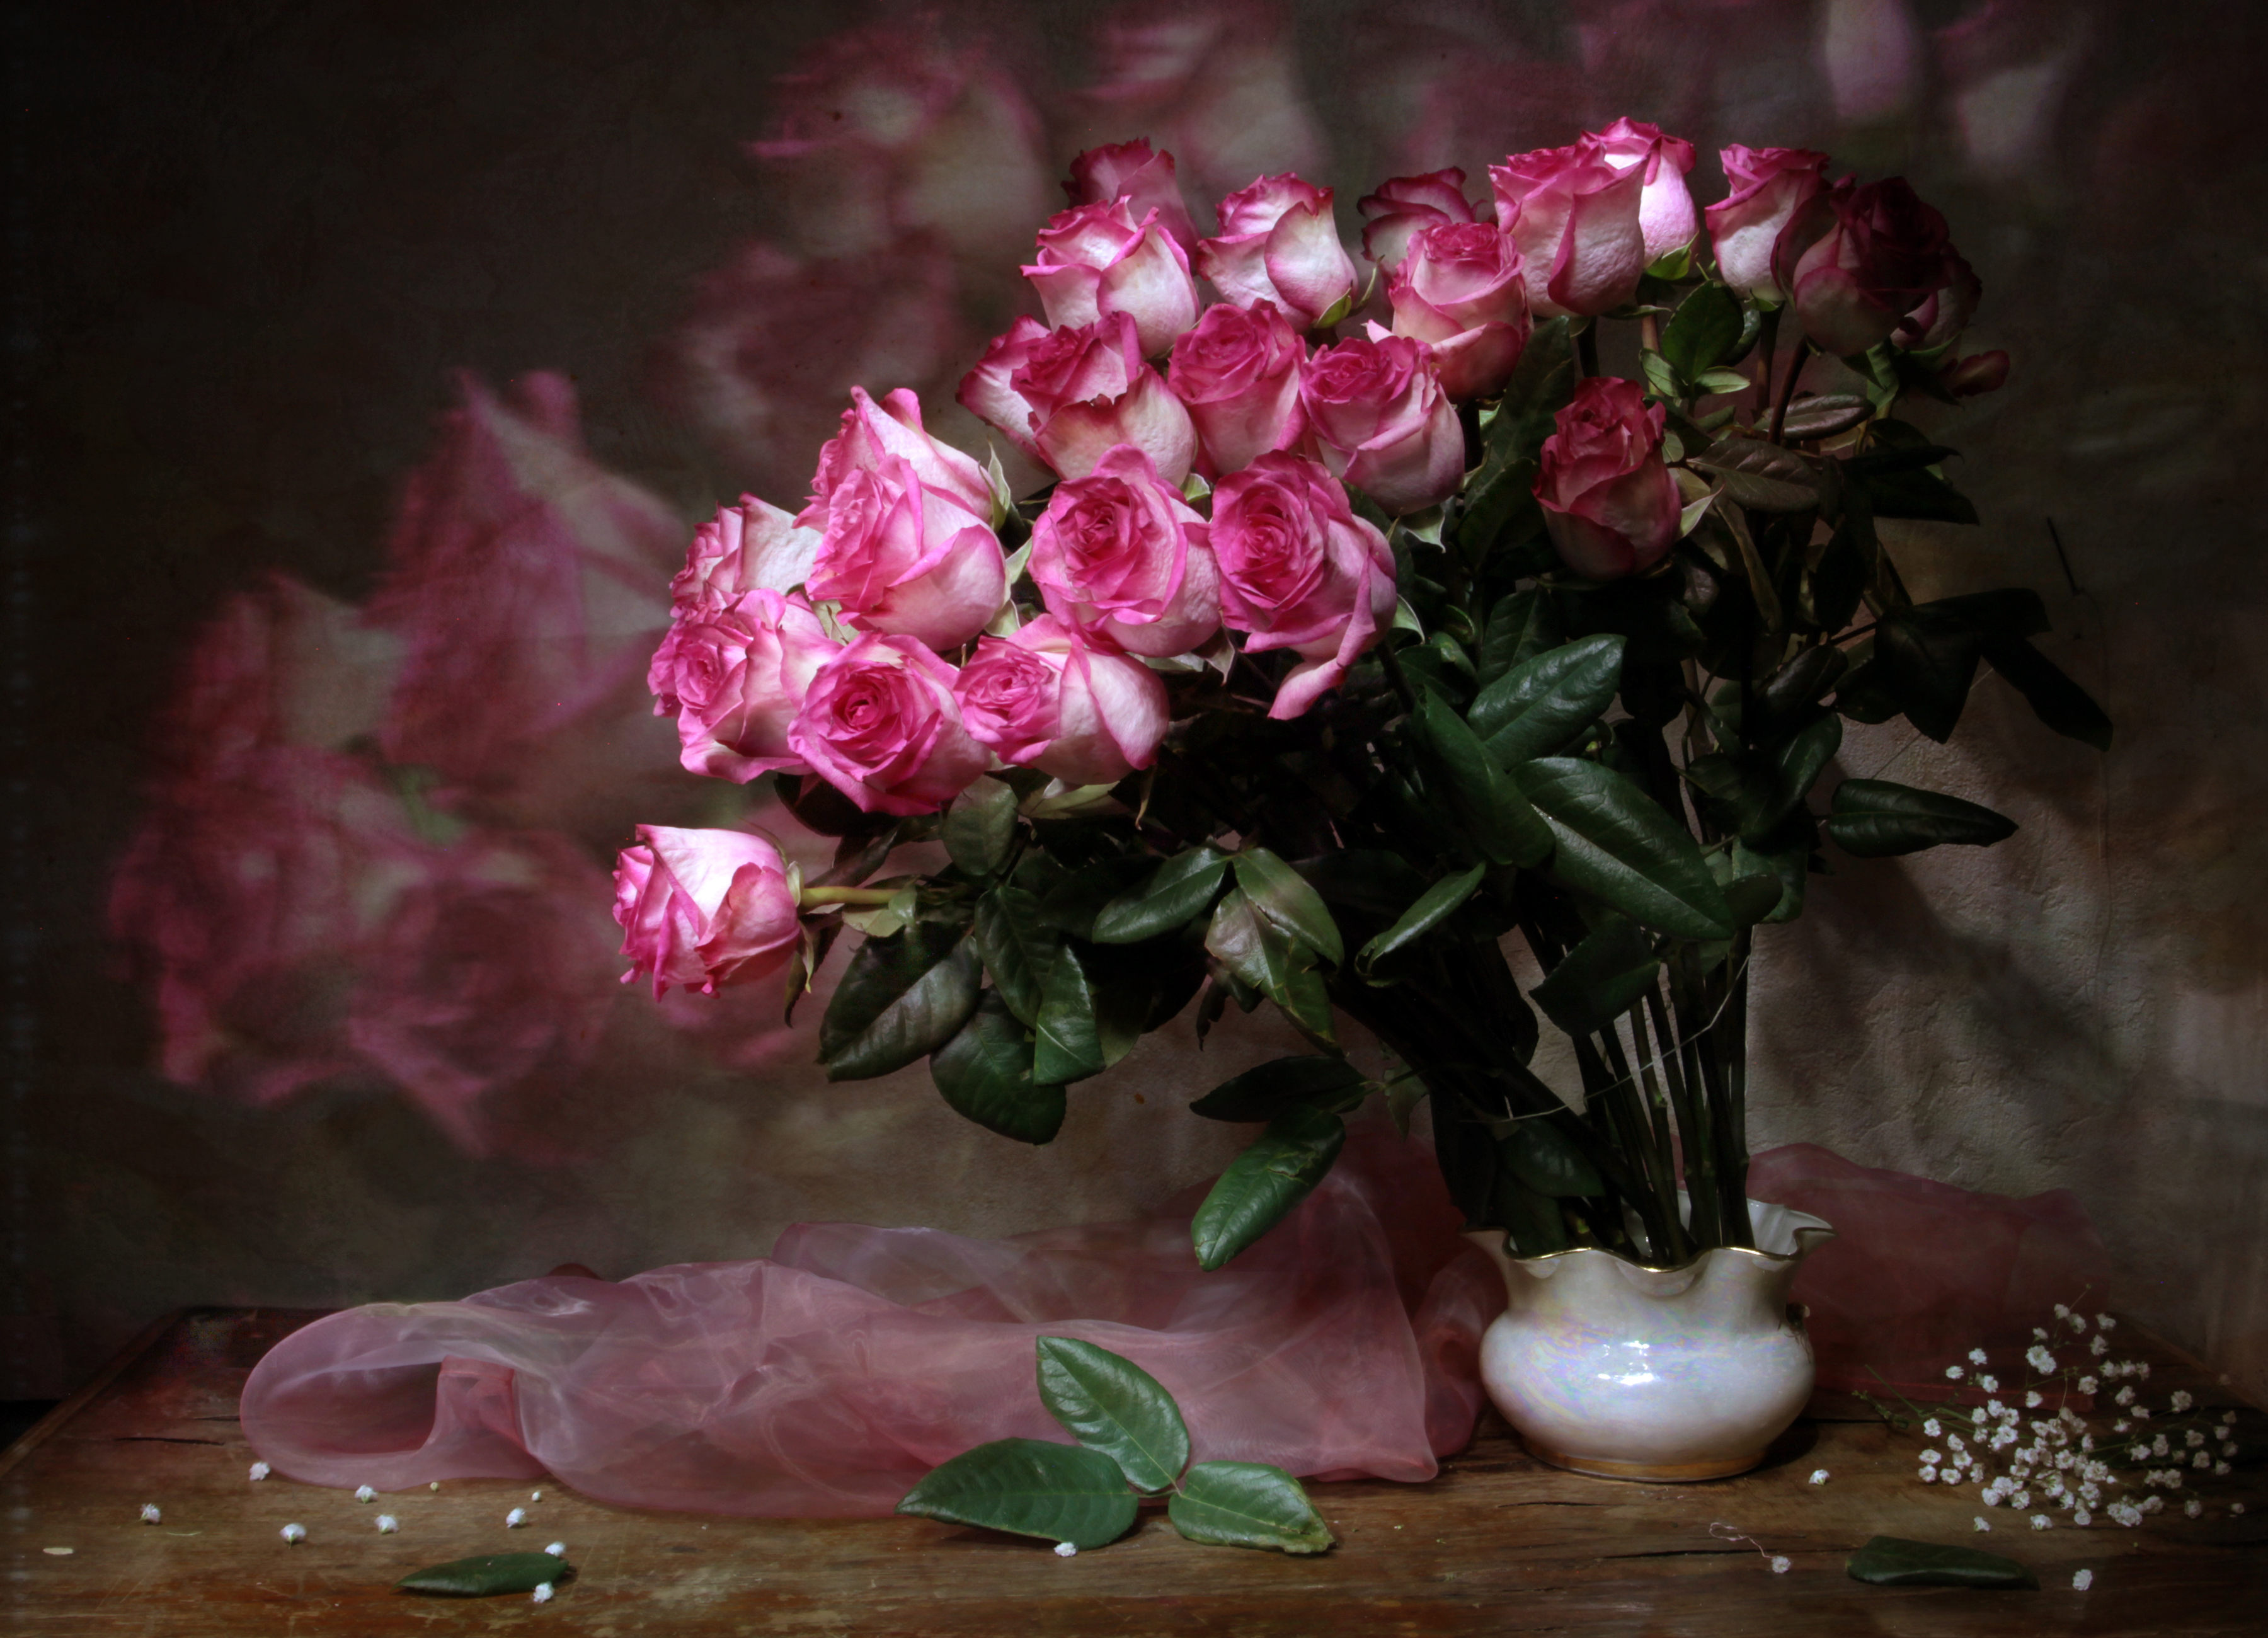 Картинка с цветами на столе. Красивый букет в вазе. Шикарные цветы в вазе. Розовые розы в вазе. Цветы в вазе на столе.